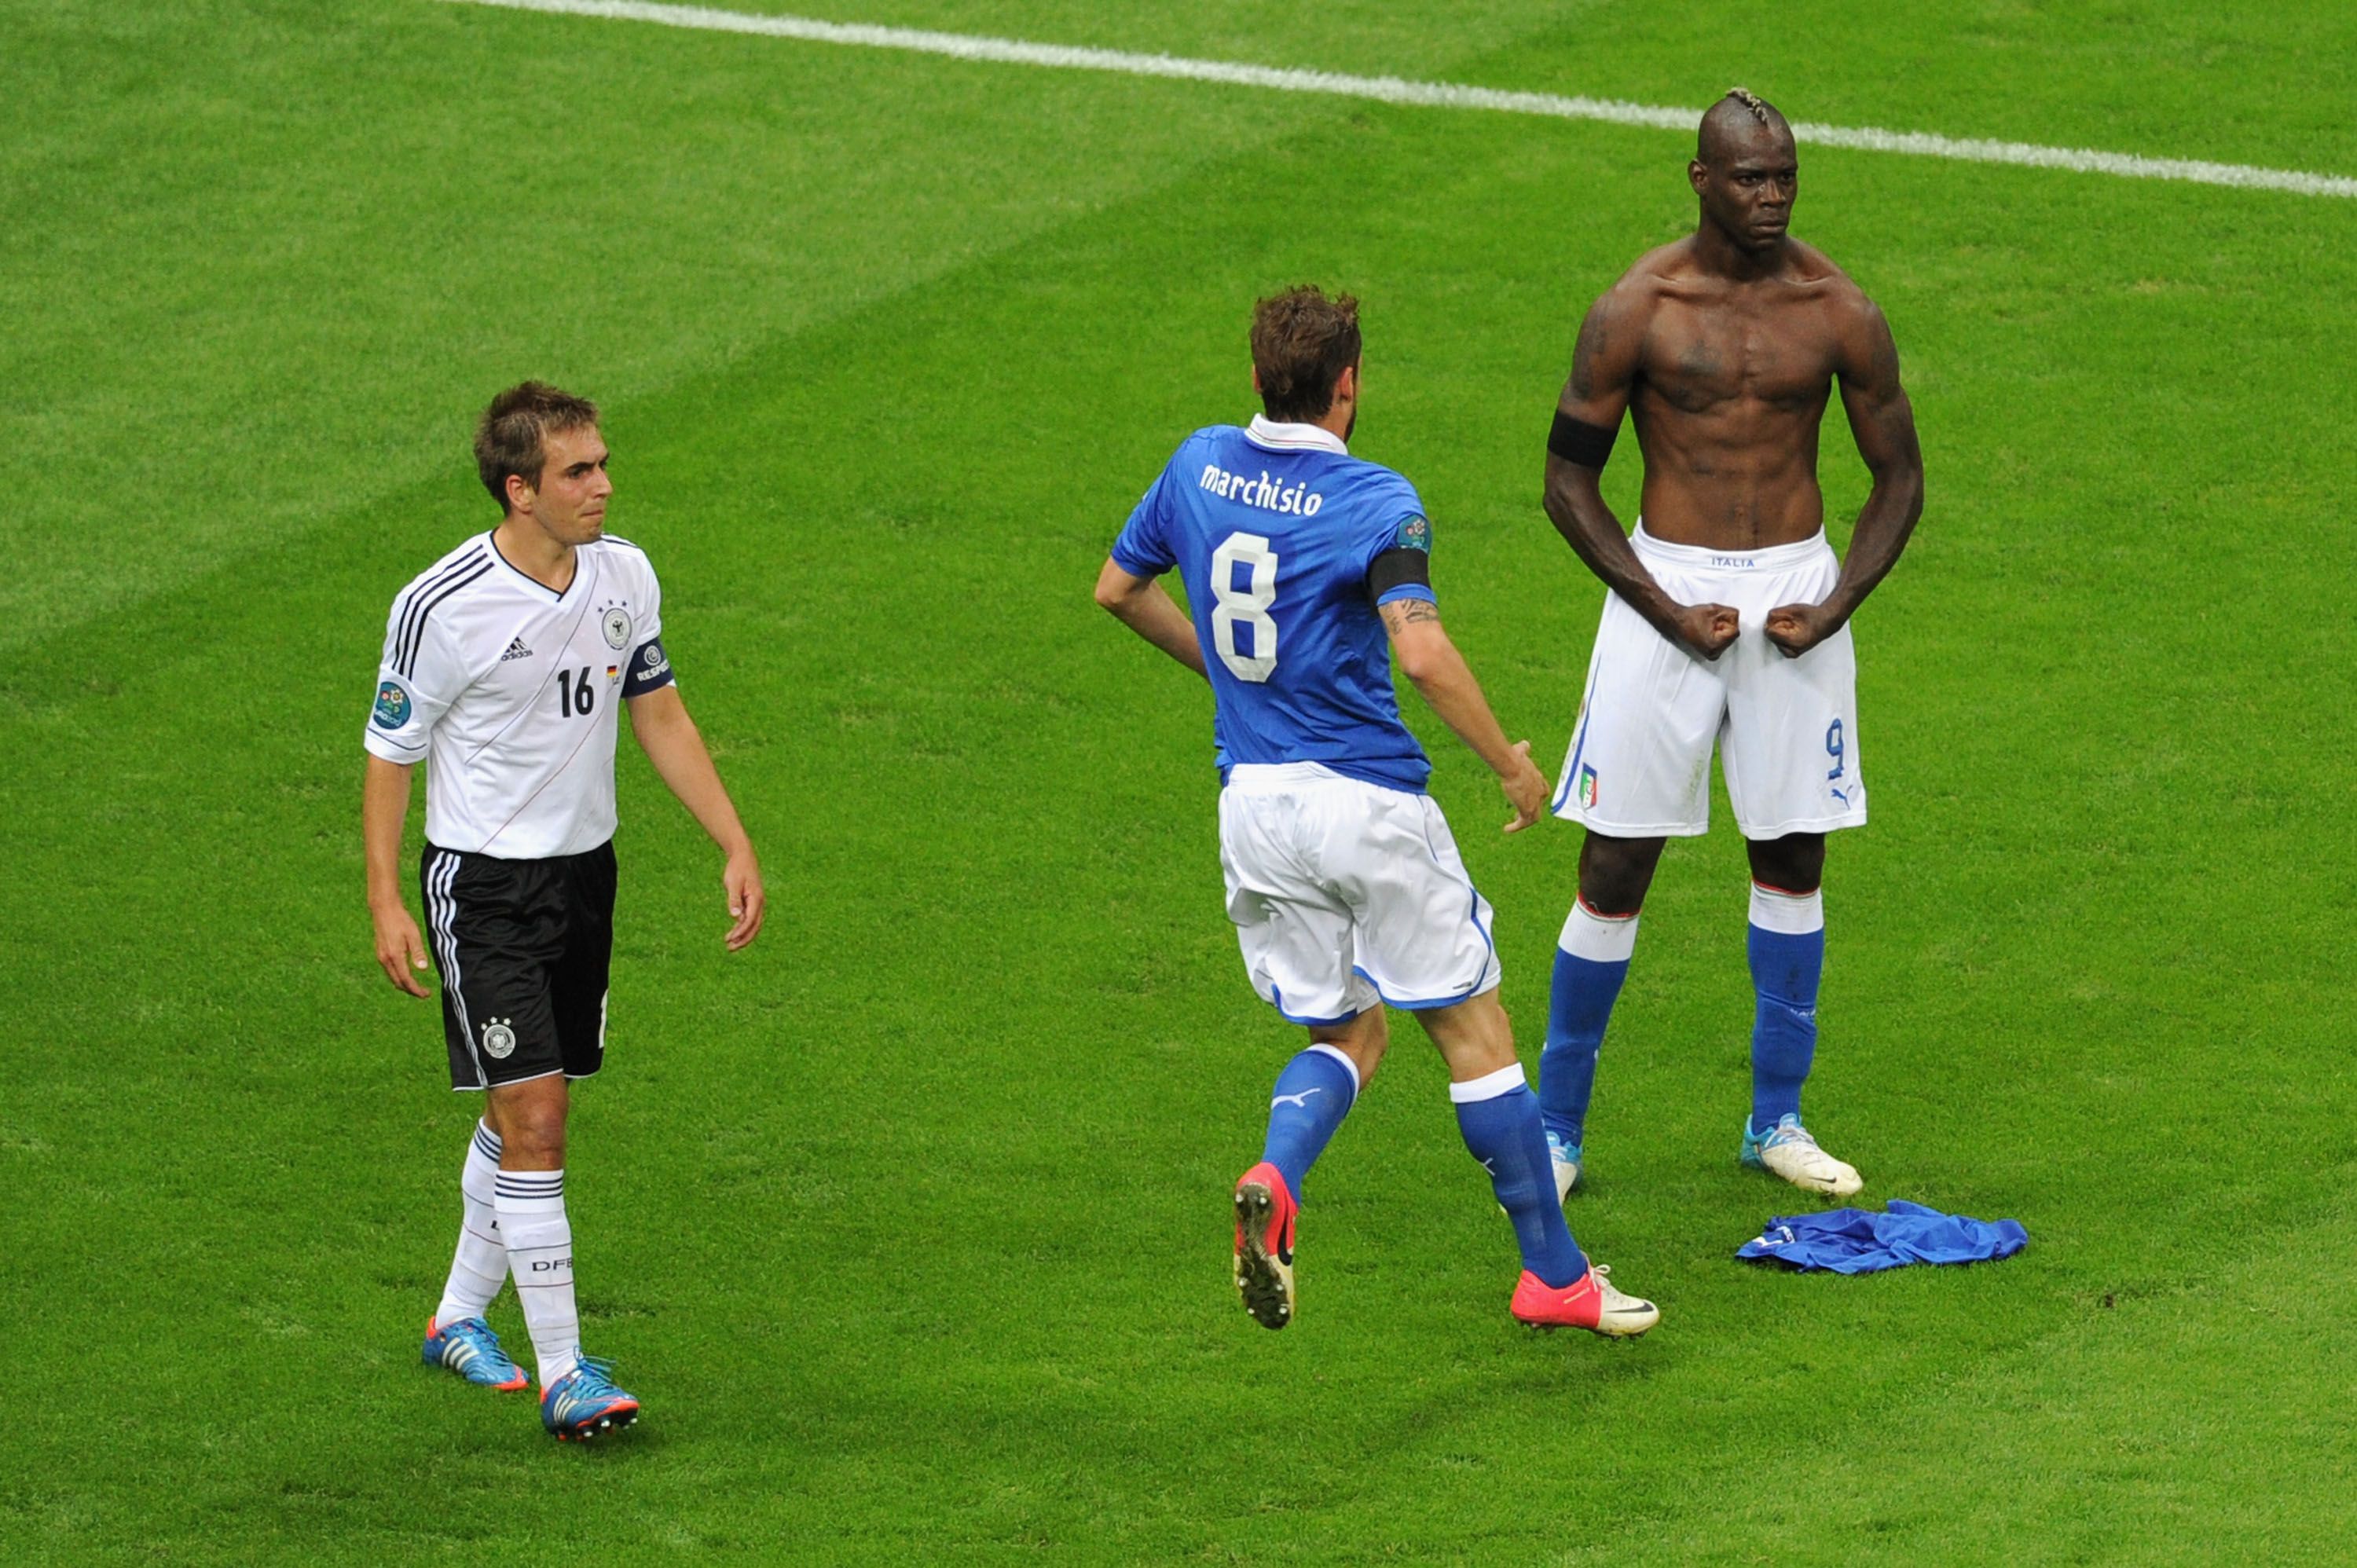 Mario Balotelli celebrates after scoring against Germany